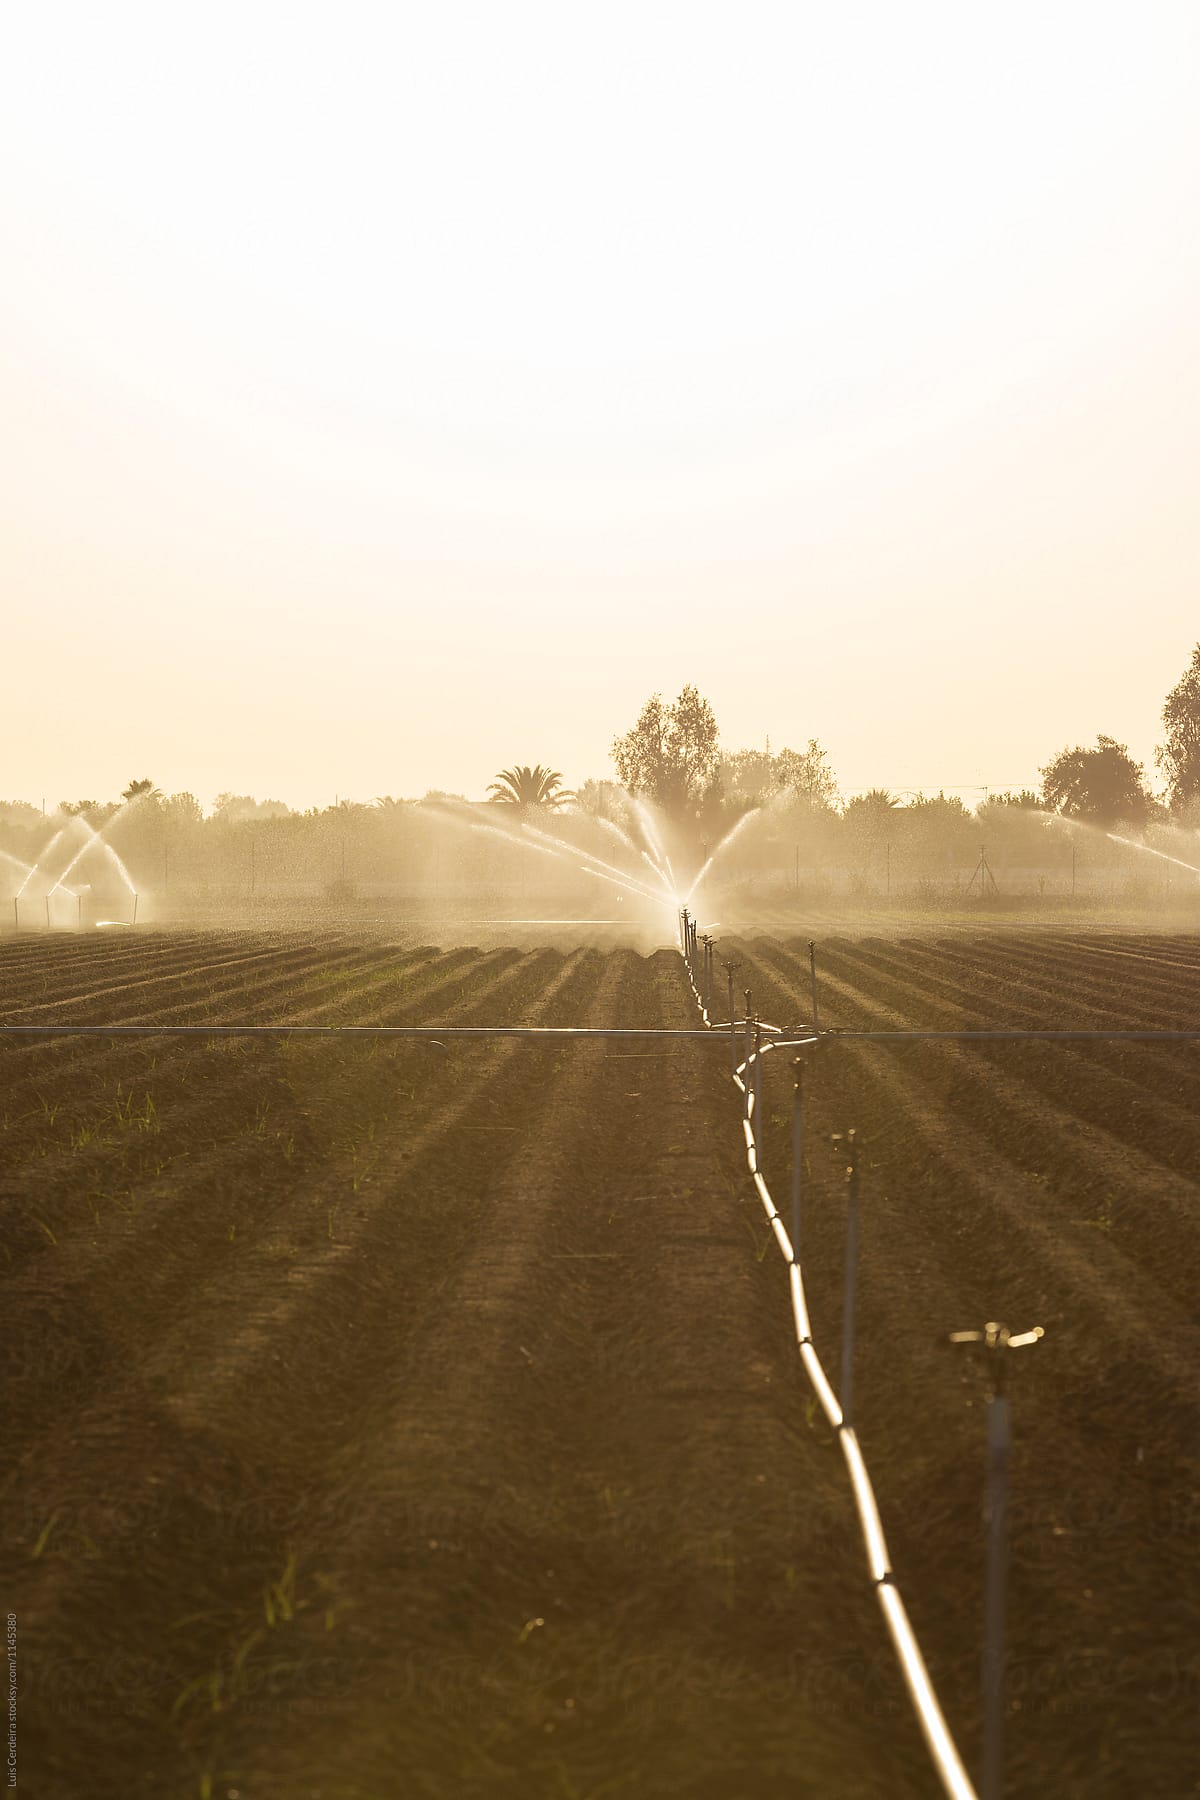 Irrigation system on a farmland at dawn